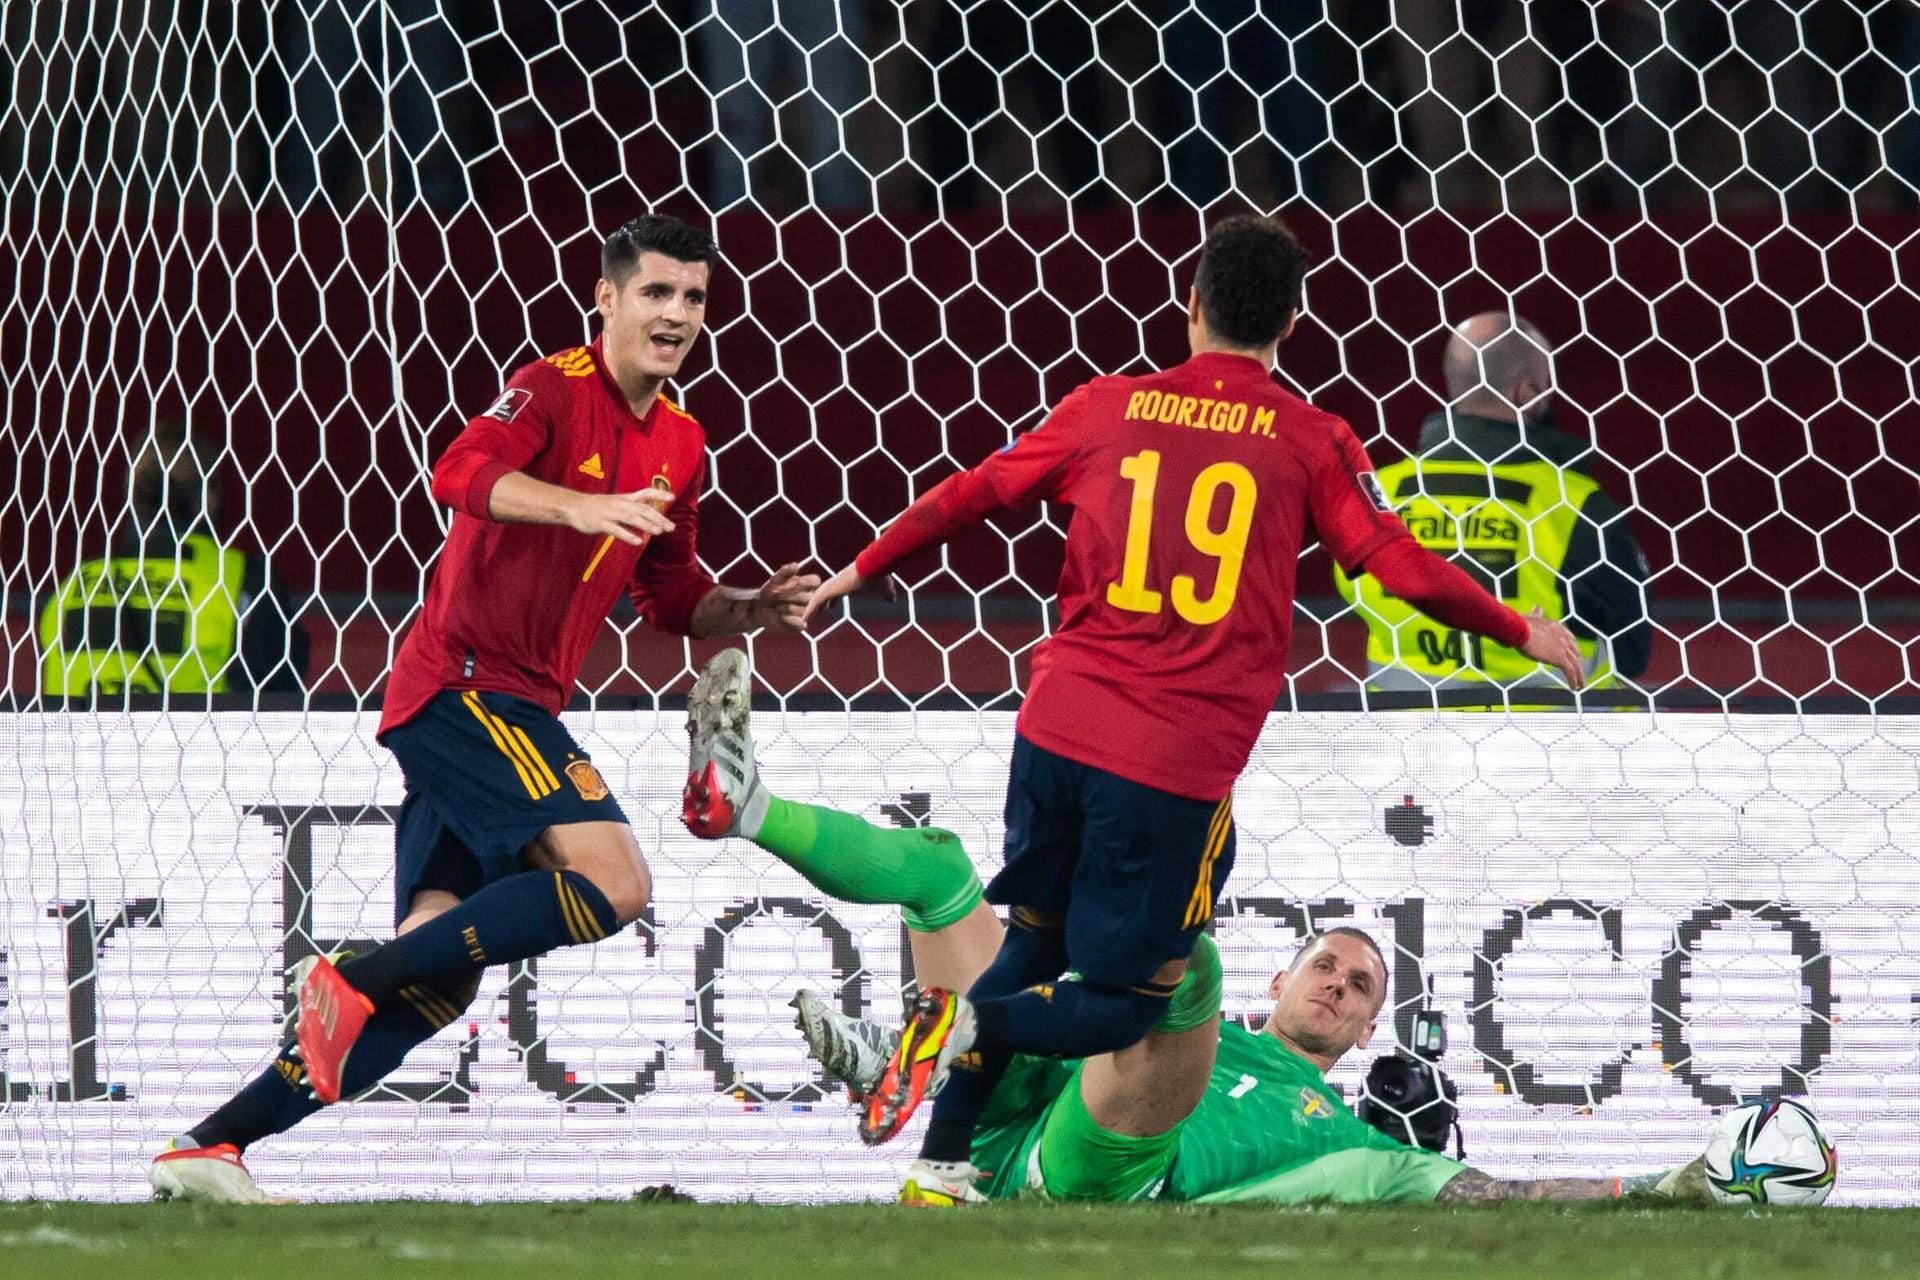 Spanien: Alvaro Morata sorgte für Erleichterung, als er im letzten Quali-Spiel gegen Schweden den 1:0-Siegtreffer erzielte. Durch diesen ist Spanien sicher in Katar dabei. Die "Furia Roja" begeistert durch ballsicheren Offensivfußball. In Katar einer der Top-Titelanwärter.